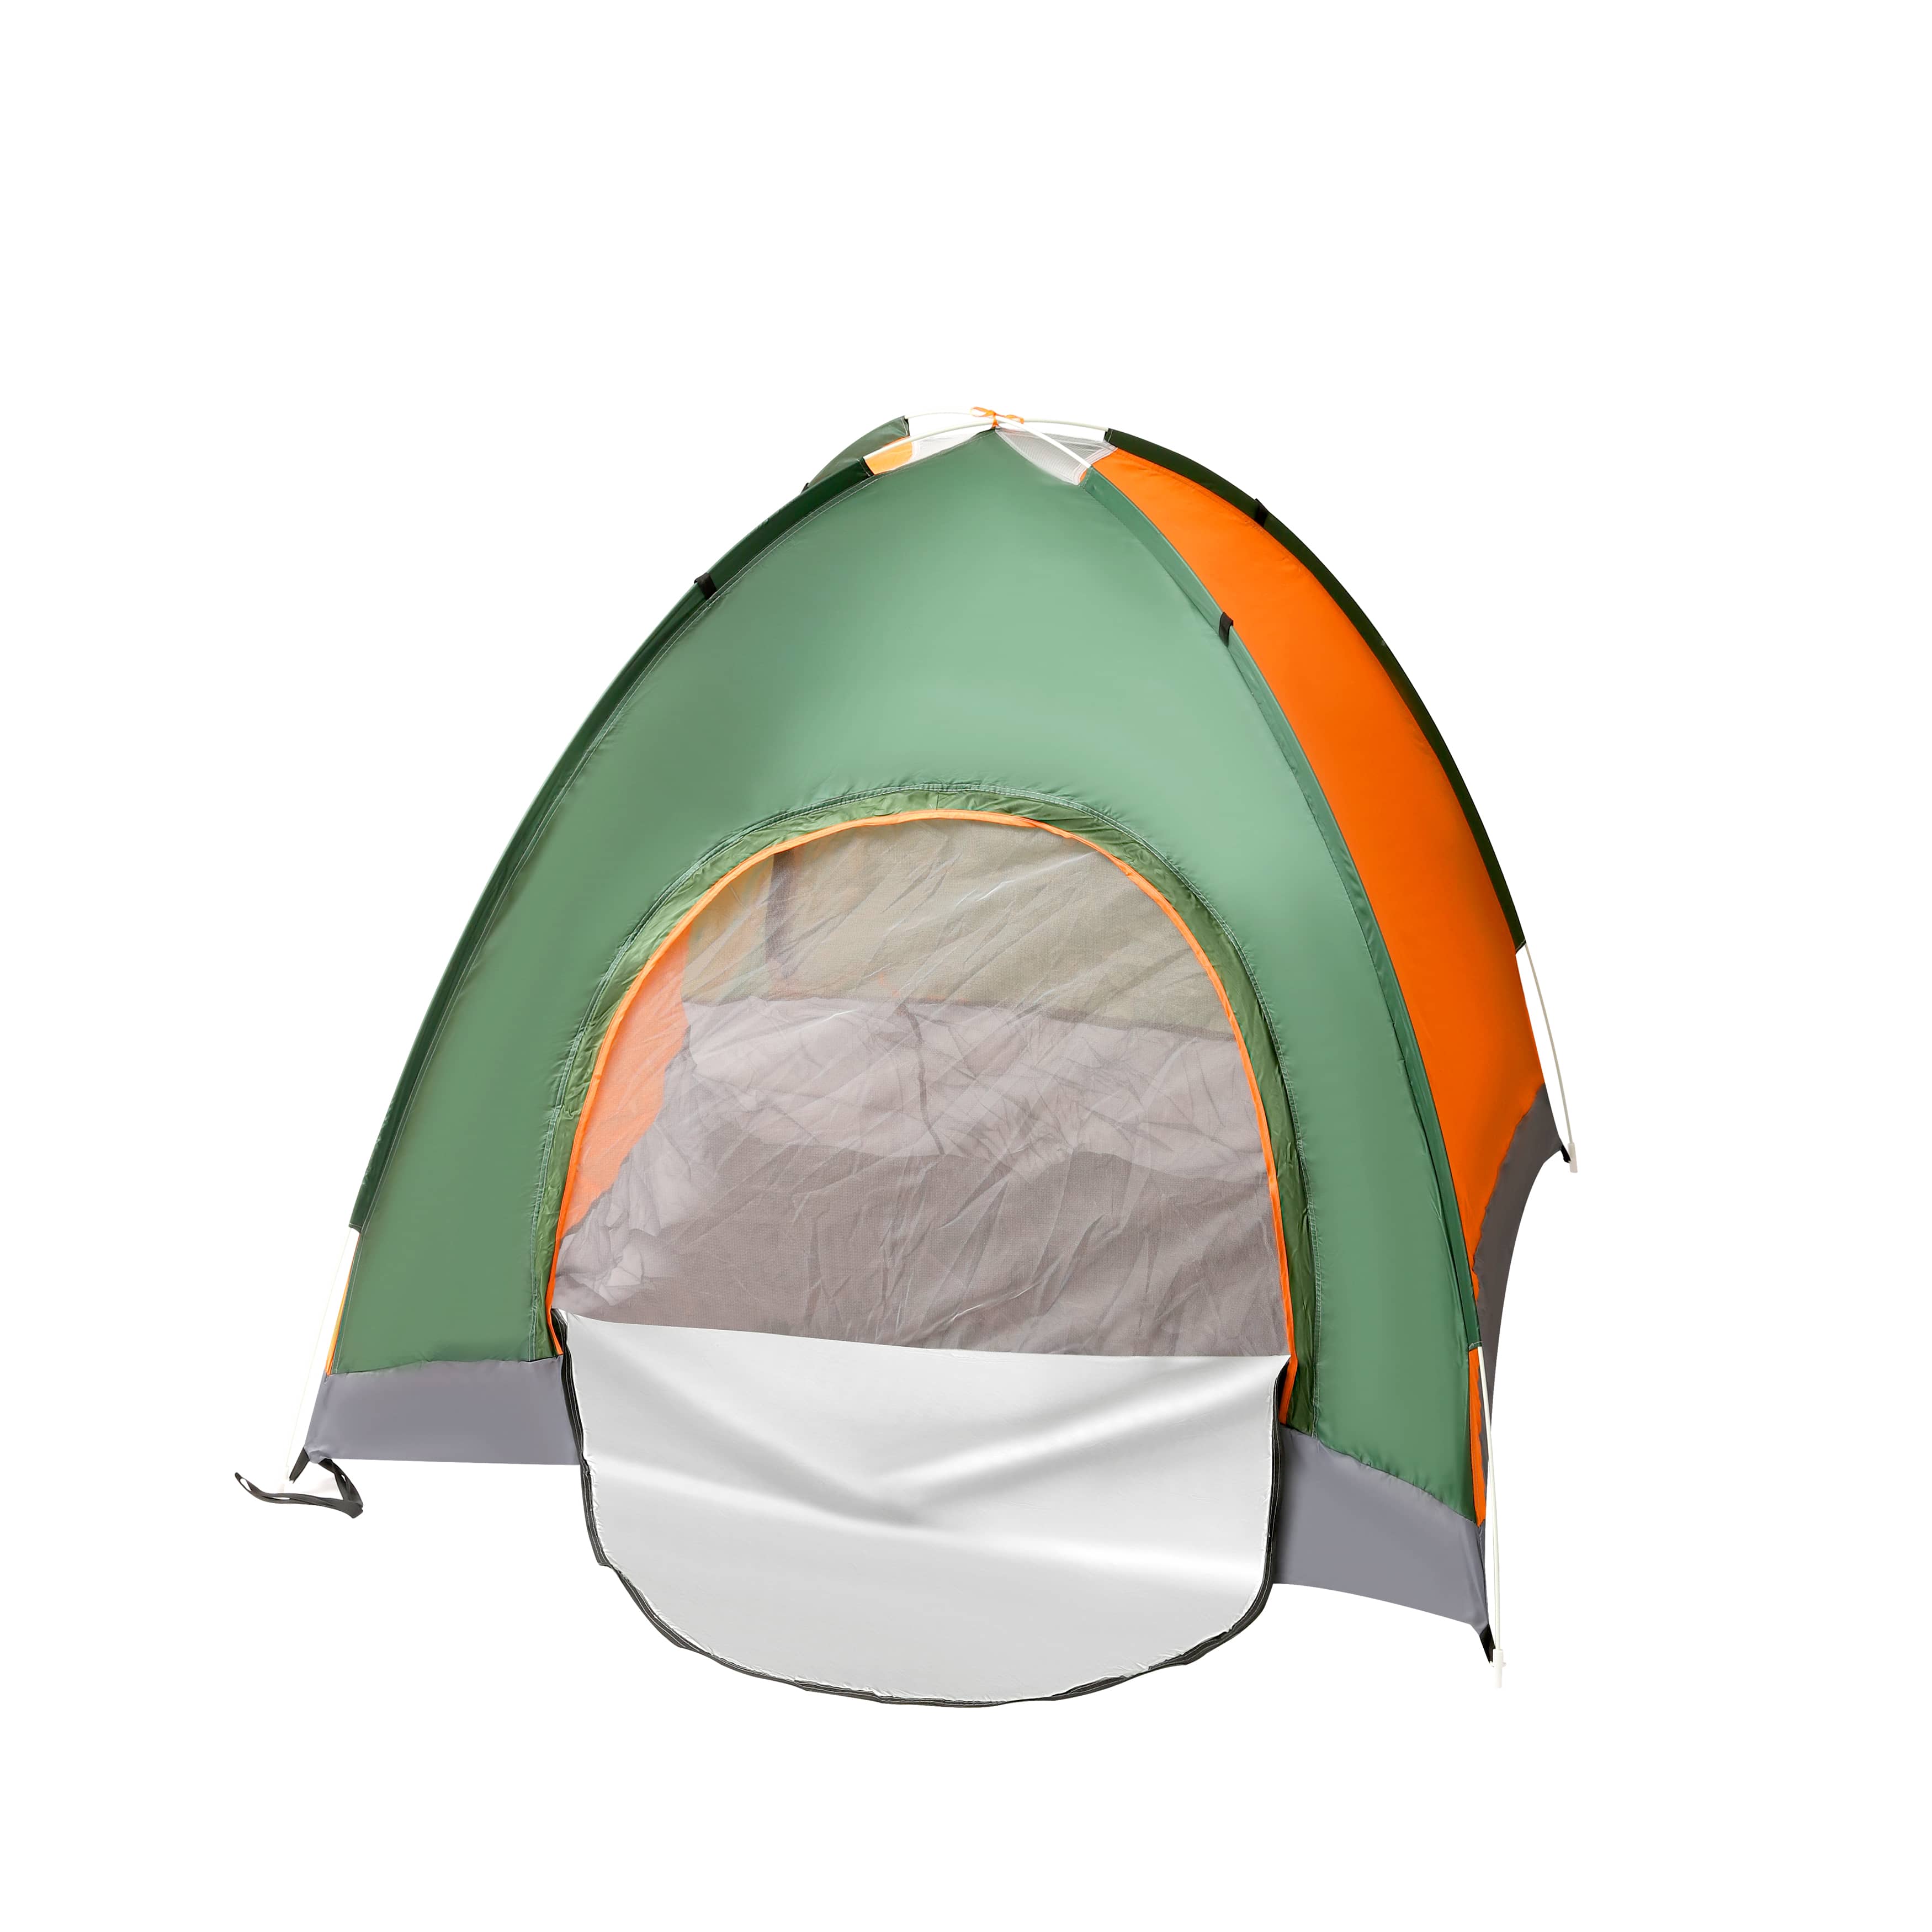 Economy 3 Man Dome Tent